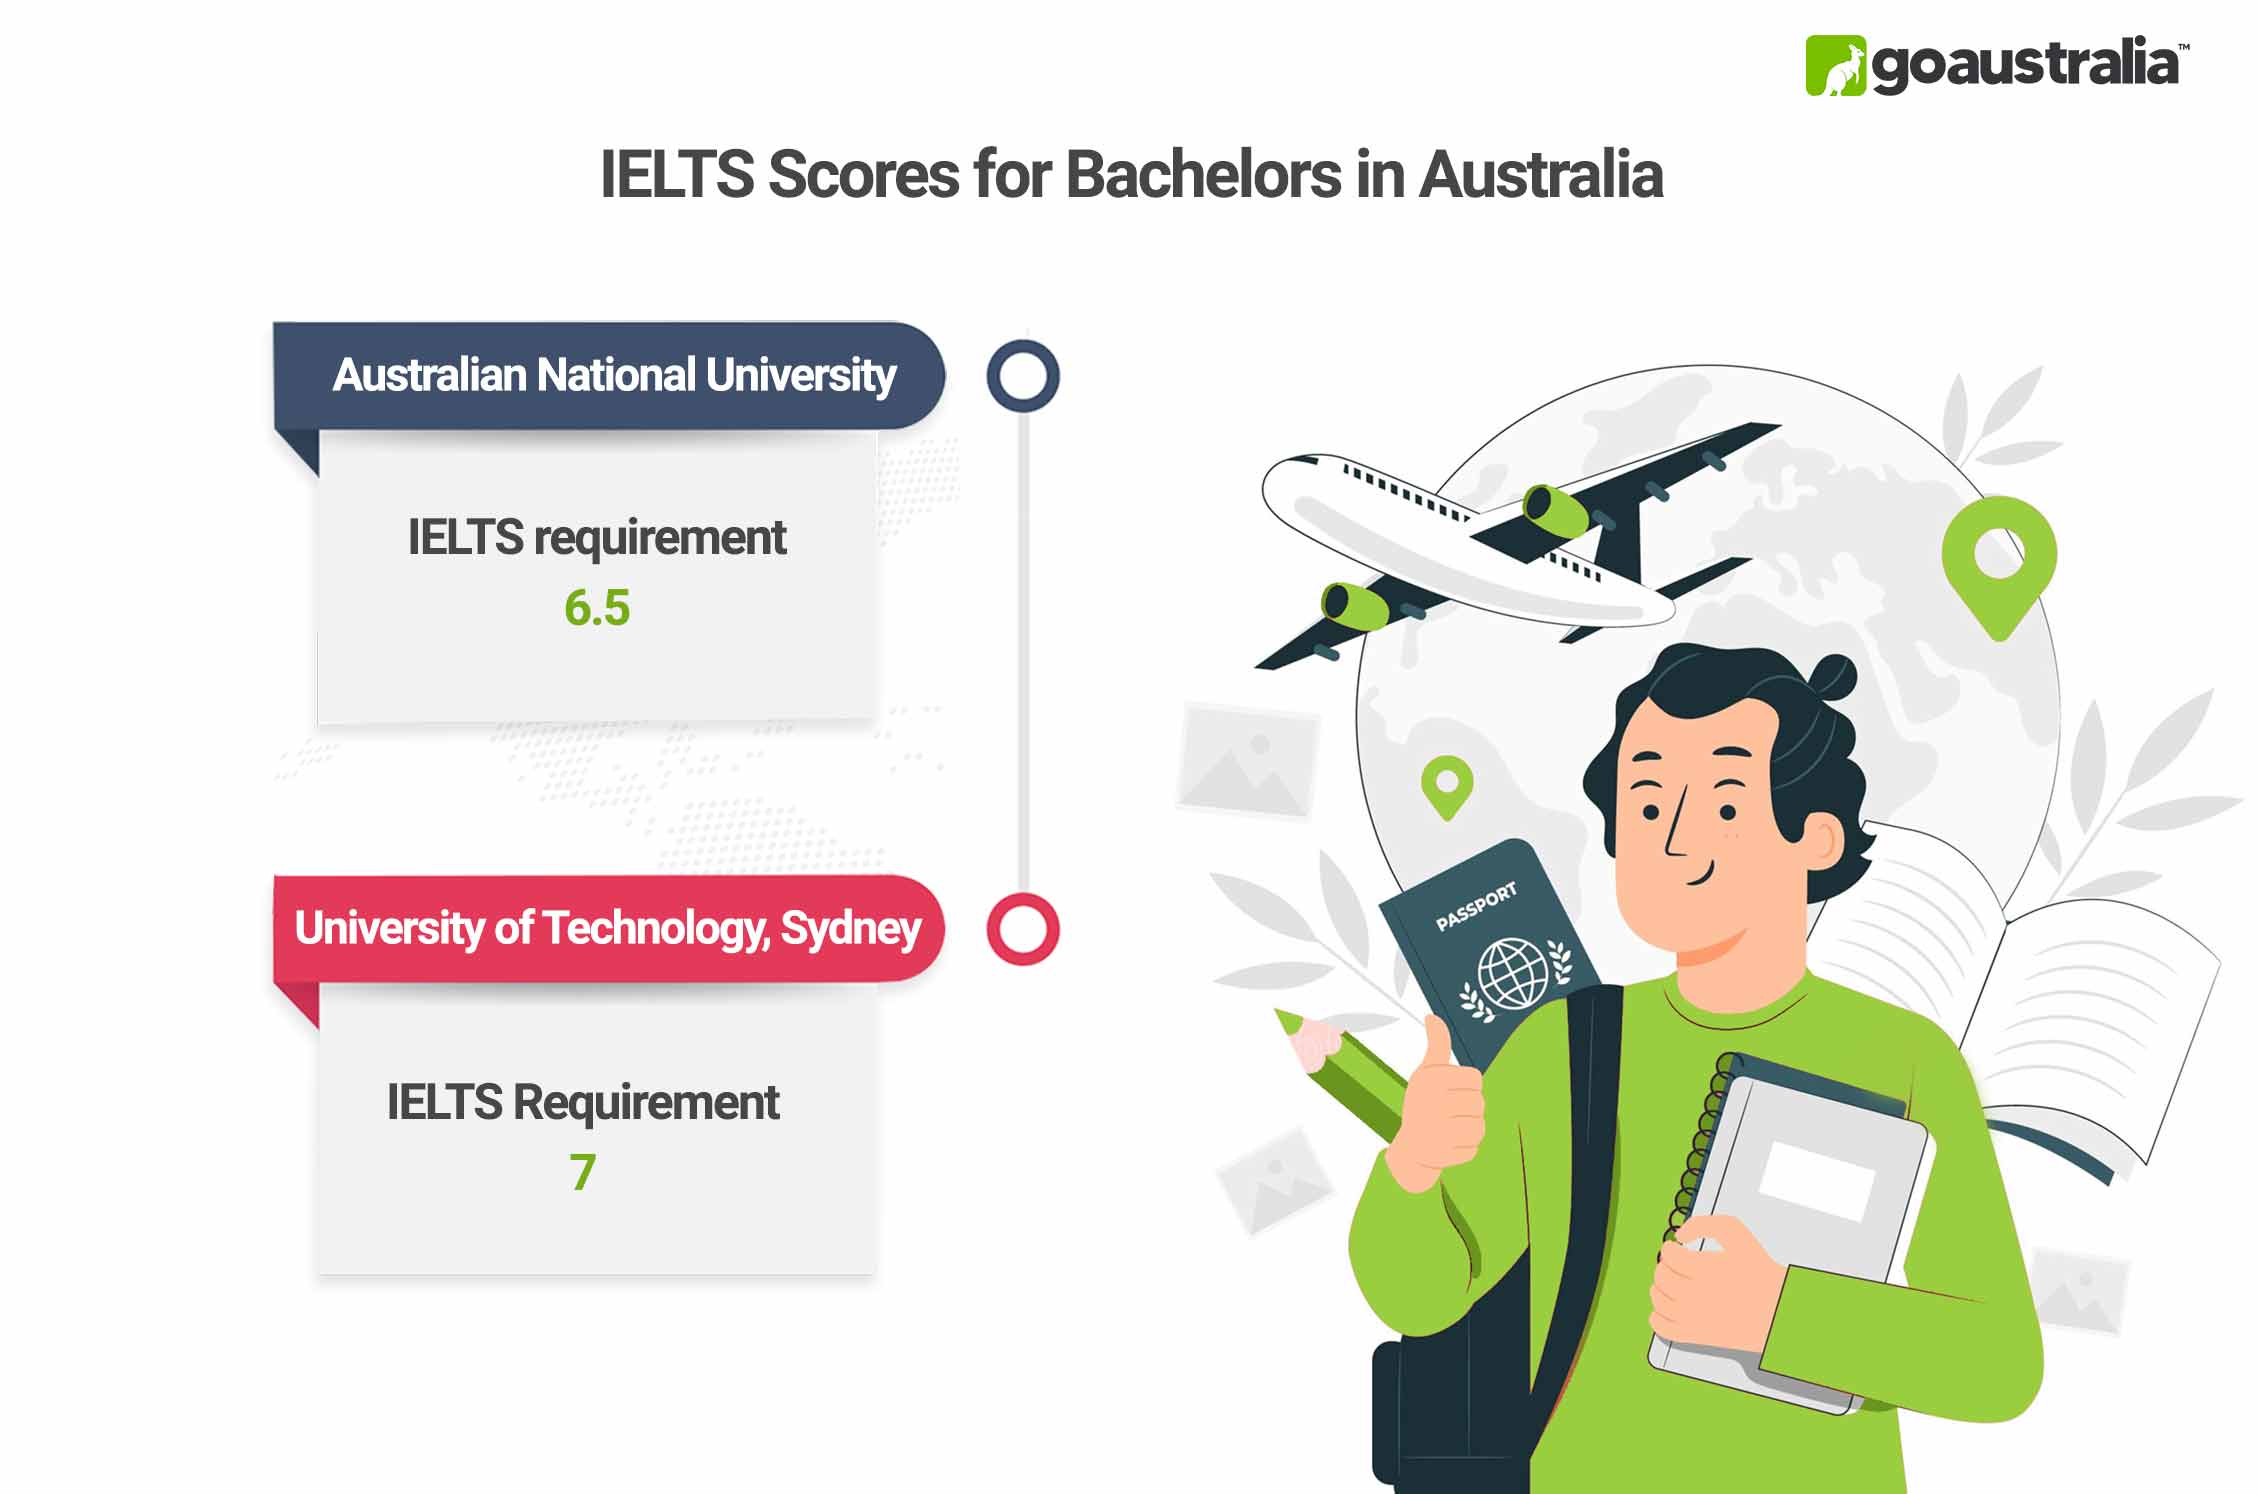 Bachelors in Australia IELTS Score